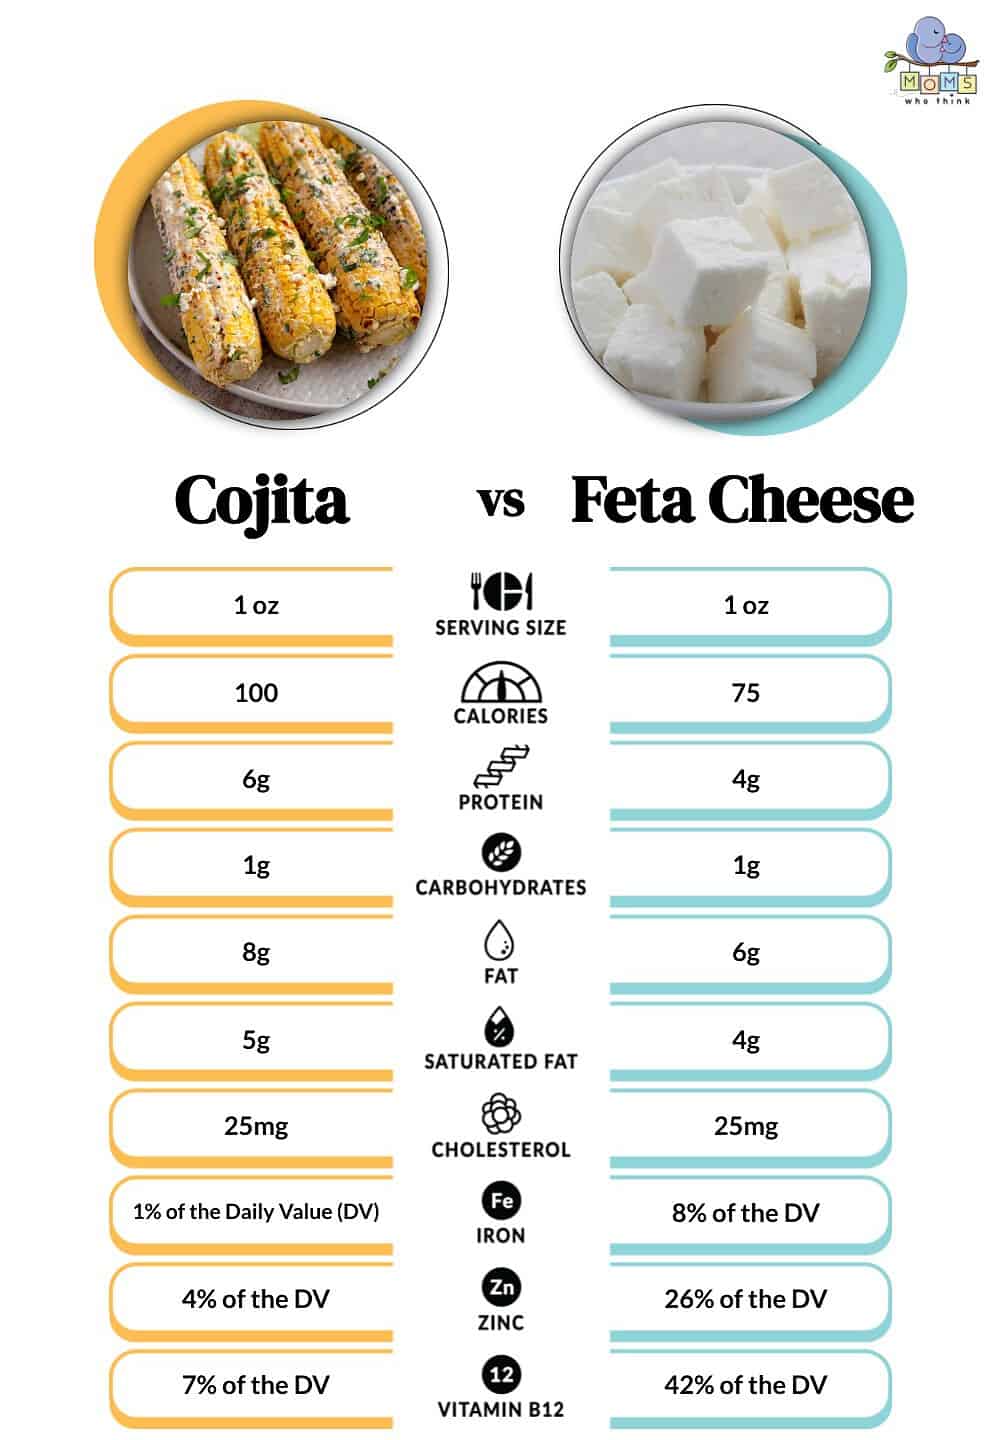 Cojita vs Feta Cheese Nutritional Comparison